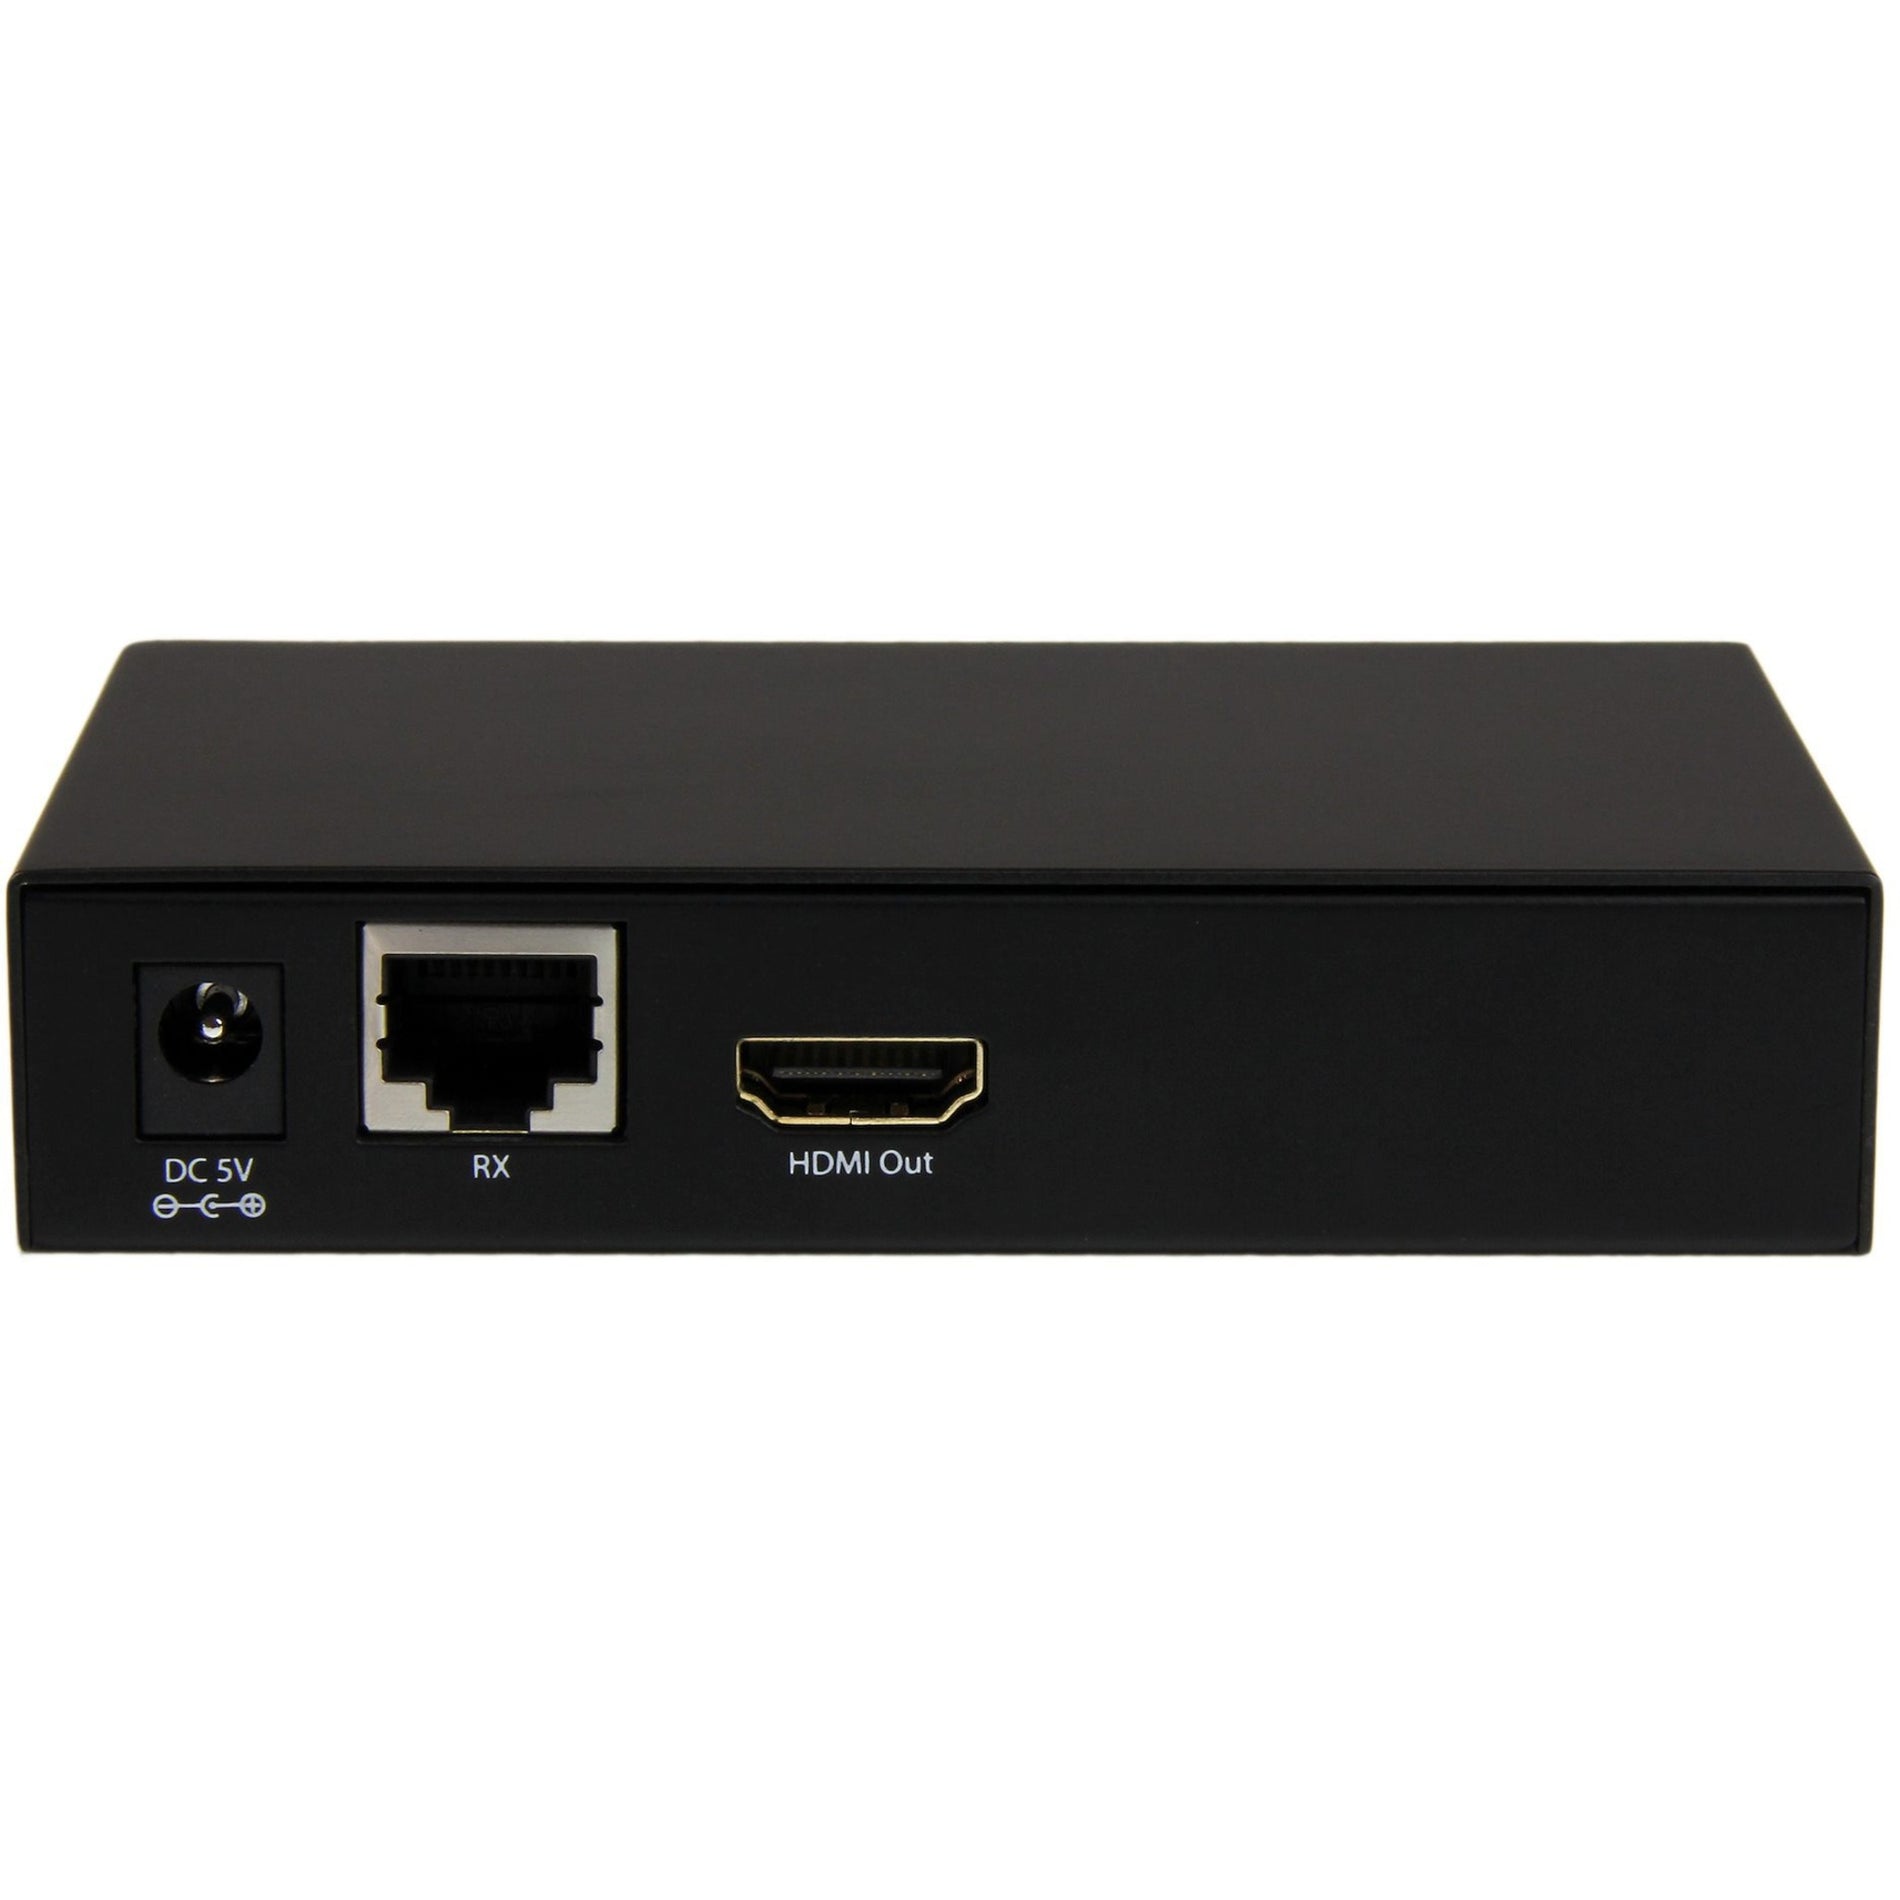 StarTech.com STHDBTRX HDMI over Cat5 / Cat6 Receiver for ST424HDBT - 230ft (70m) - 4K / 1080p, Video Extender Receiver